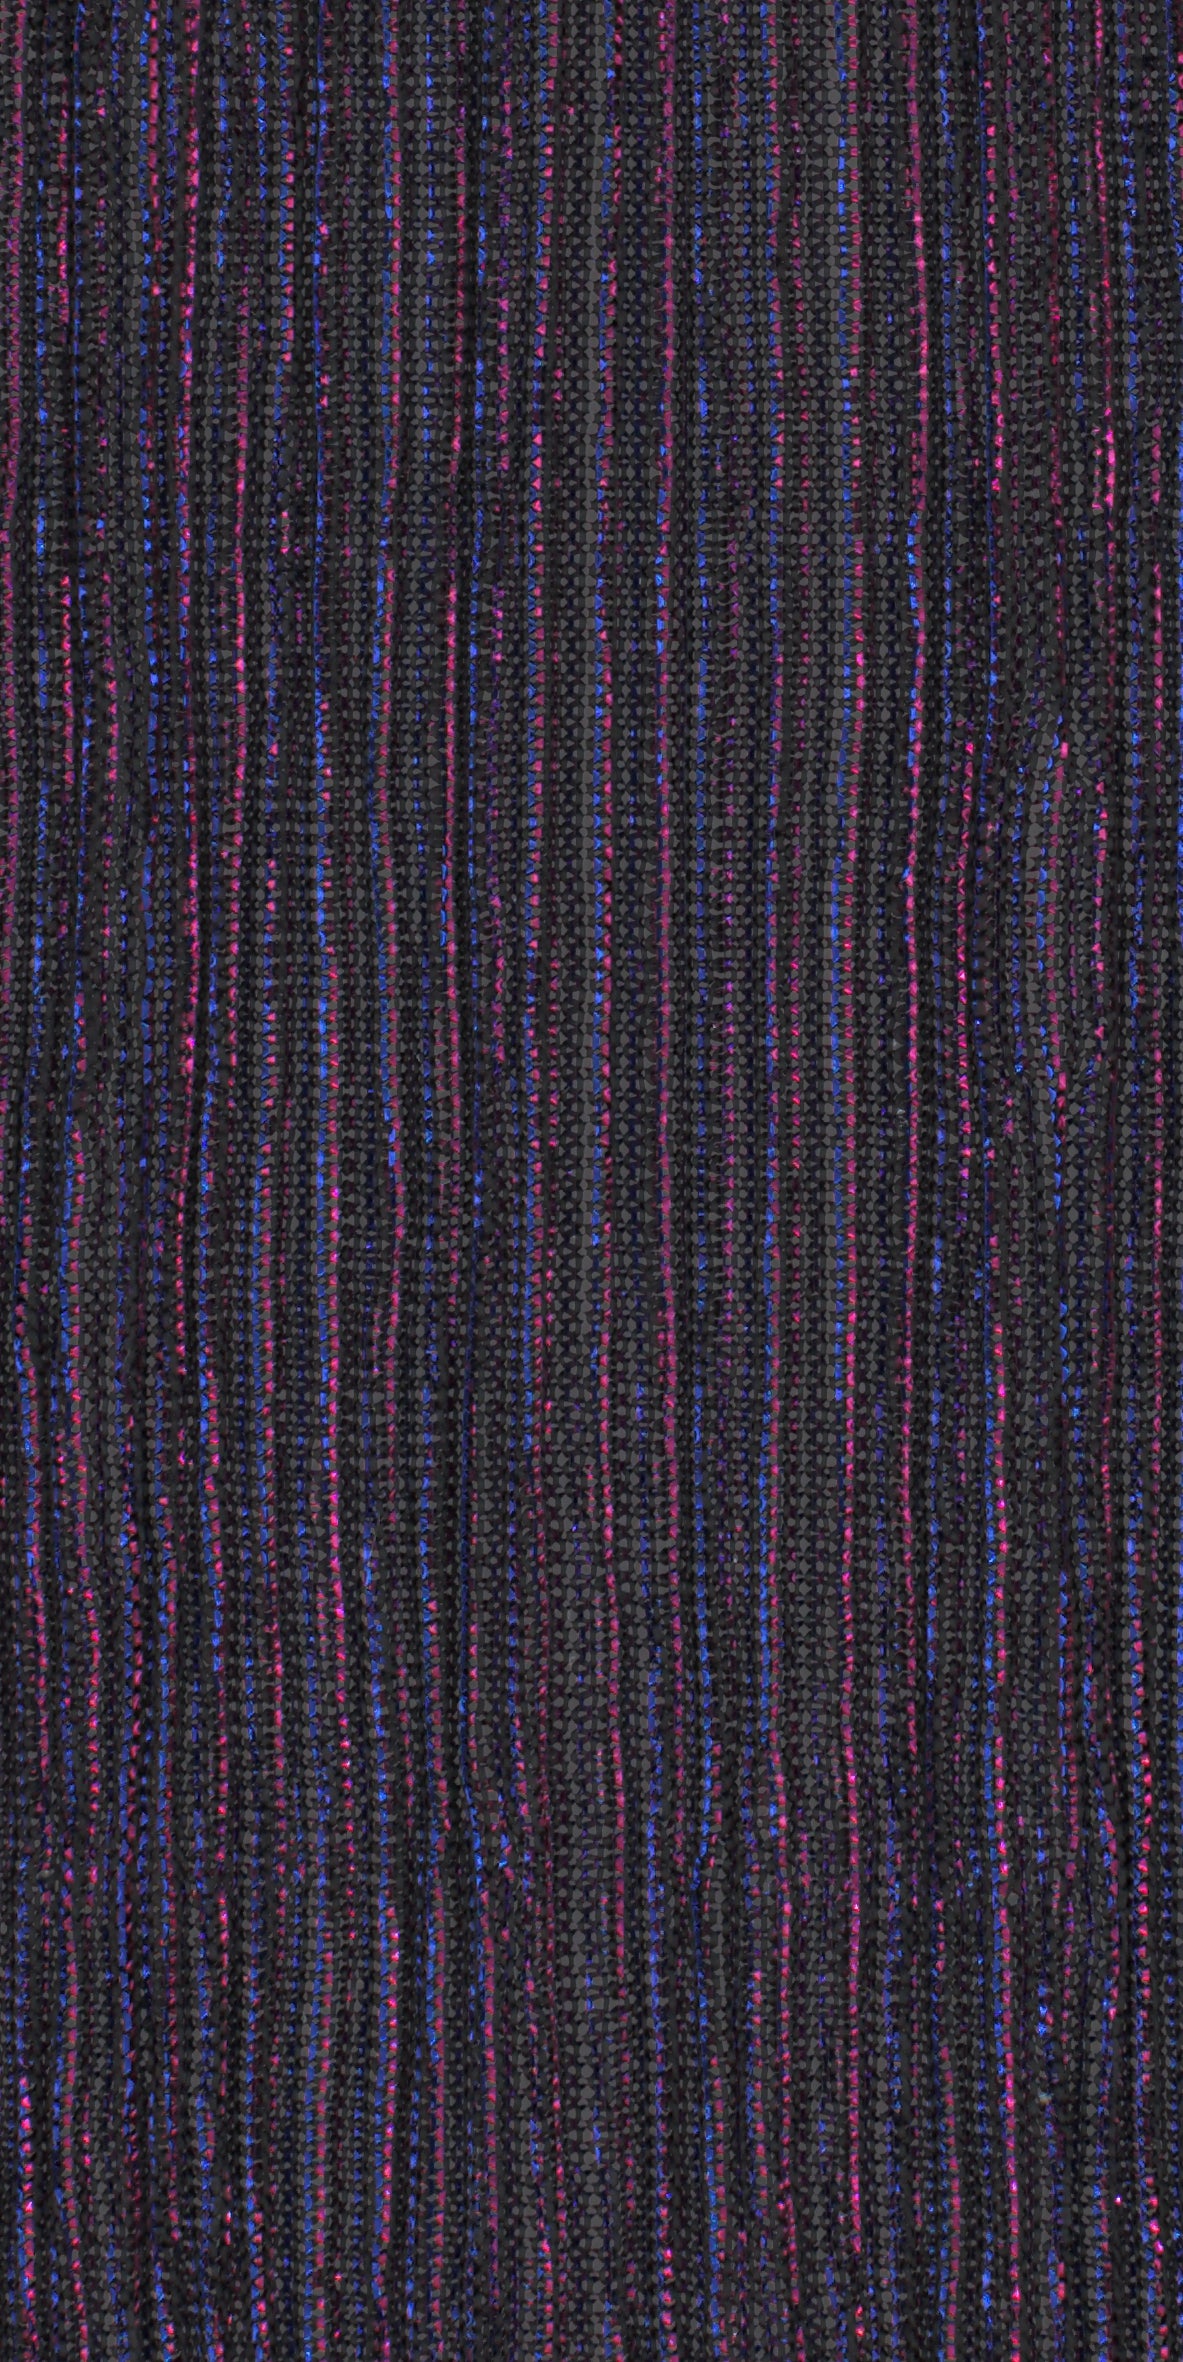 12006-22 Black Blue Red Metallic Pleat Plain Dyed Blend 126g/yd 56" black blend blue knit metallic plain dyed pleat ppl new red Metallic, Pleat - knit fabric - woven fabric - fabric company - fabric wholesale - fabric b2b - fabric factory - high quality fabric - hong kong fabric - fabric hk - acetate fabric - cotton fabric - linen fabric - metallic fabric - nylon fabric - polyester fabric - spandex fabric - chun wing hing - cwh hk - fabric worldwide ship - 針織布 - 梳織布 - 布料公司- 布料批發 - 香港布料 - 秦榮興